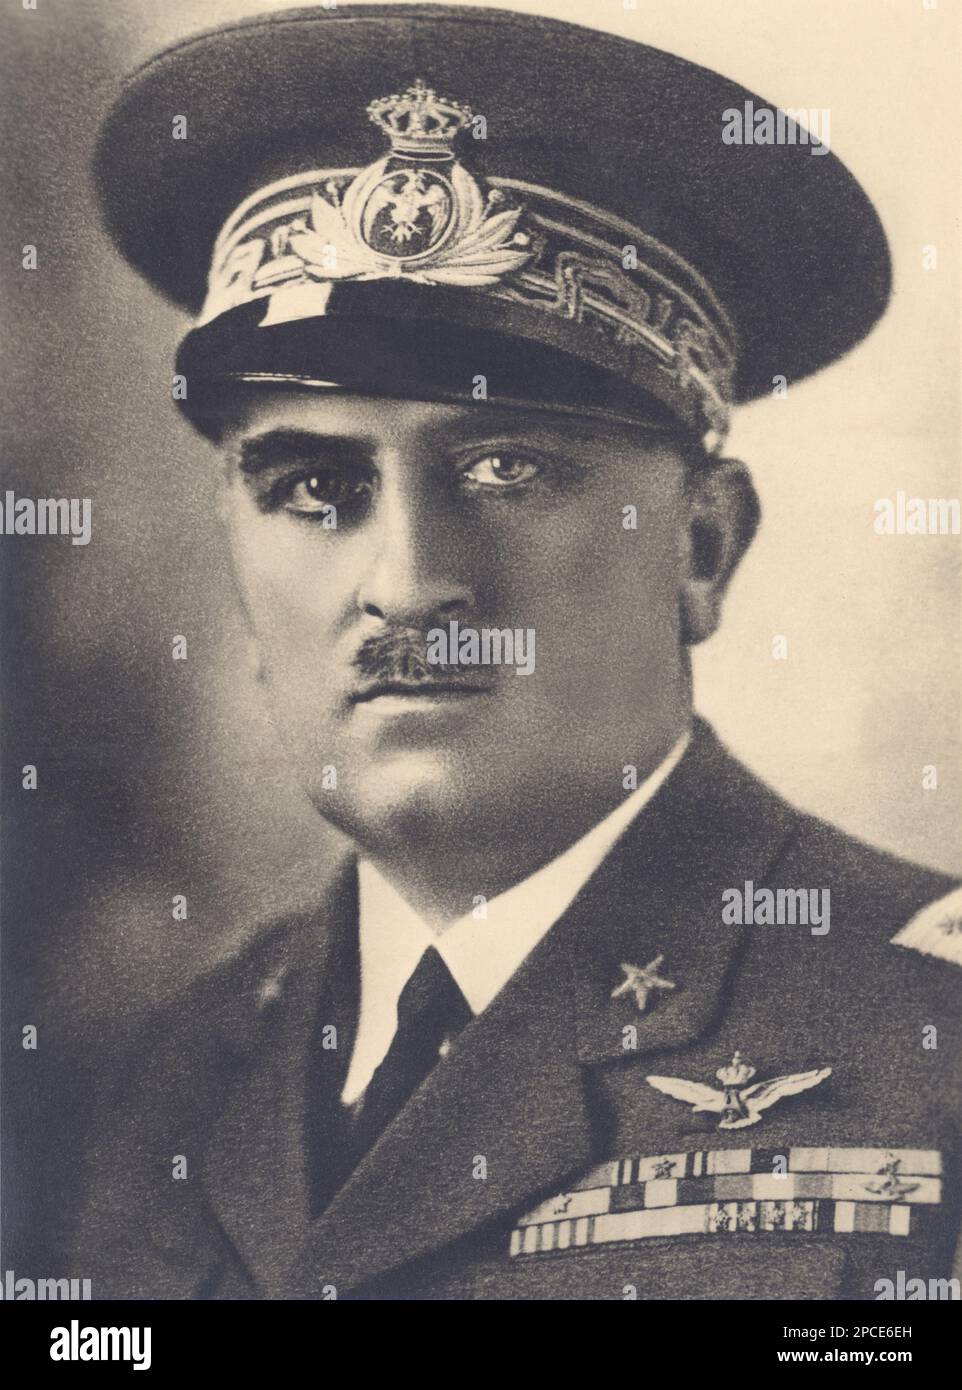 1935 ca, ITALIA : il Generale EDOARDO VALLE , Ministro dell'Aviazione Fascista ai tempi della guerra civile in Spagna - GUERRA civile SPAGNOLA - di SPAGNA - foto storiche - foto storica - STORIA - ritratto - ITALIA - WW2 - GUERRA MONDIALE 2 - SEZIONE GUERRA Mondiale - AVIATORE - AVIAZIONE - divisa uniforme militare - Uniforme militare - baffi - baffi - FASCISTA - FASCISTA - FASCISTA - AVIATORE - AVIATORE ---- Archivio GBB Foto Stock